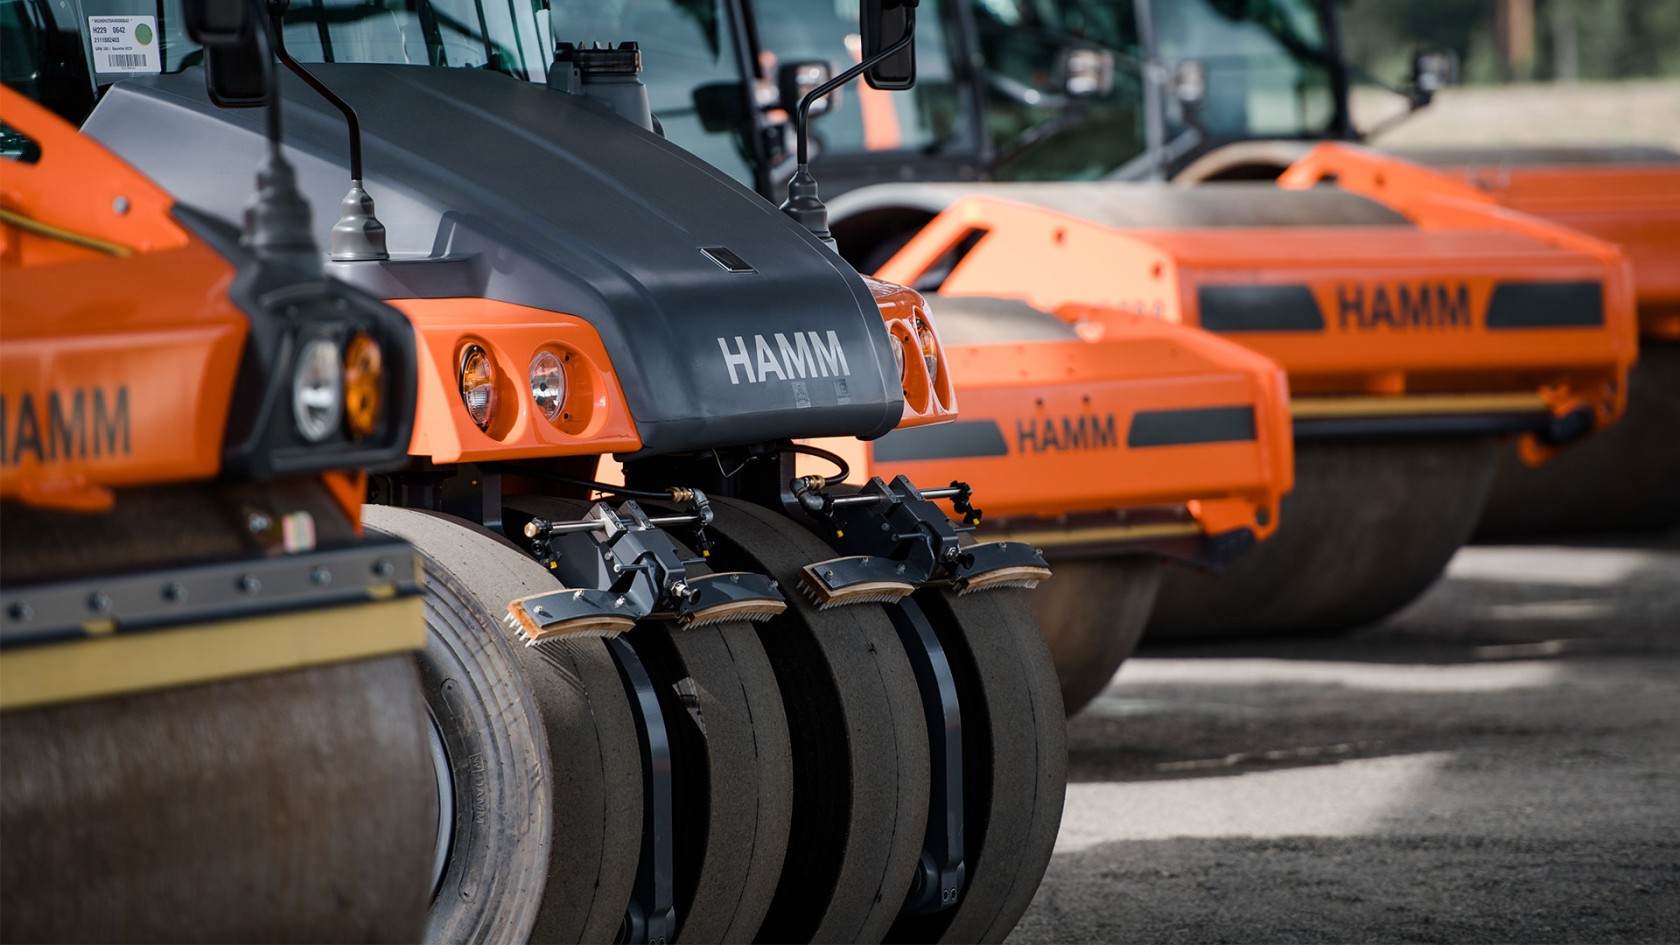 HAMM, yol yapımı, peyzaj ve hafriyat işleri için dünya çapında çok geniş bir ürün yelpazesi sunmaktadır. Ürün yelpazesinde kompaktörler, tandem silindirler ve lastik tekerlekli silindirler bulunur.